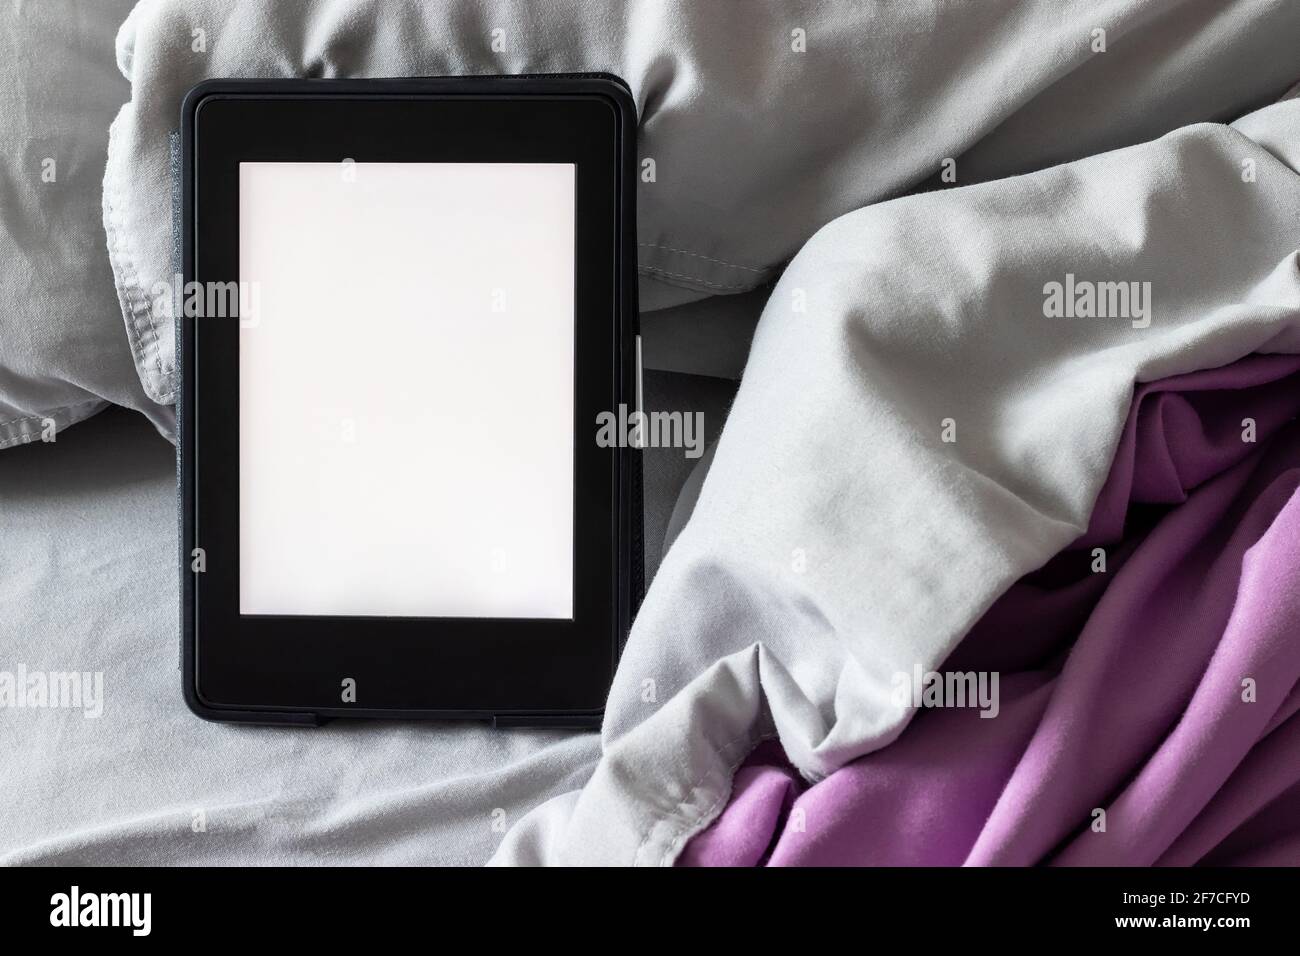 Ein modernes elektronisches E-Reader mit einem leeren Bildschirm auf einem grauen und violetten Bett. Mockup Tablet auf Microfaser-Bettwäsche Nahaufnahme Stockfoto